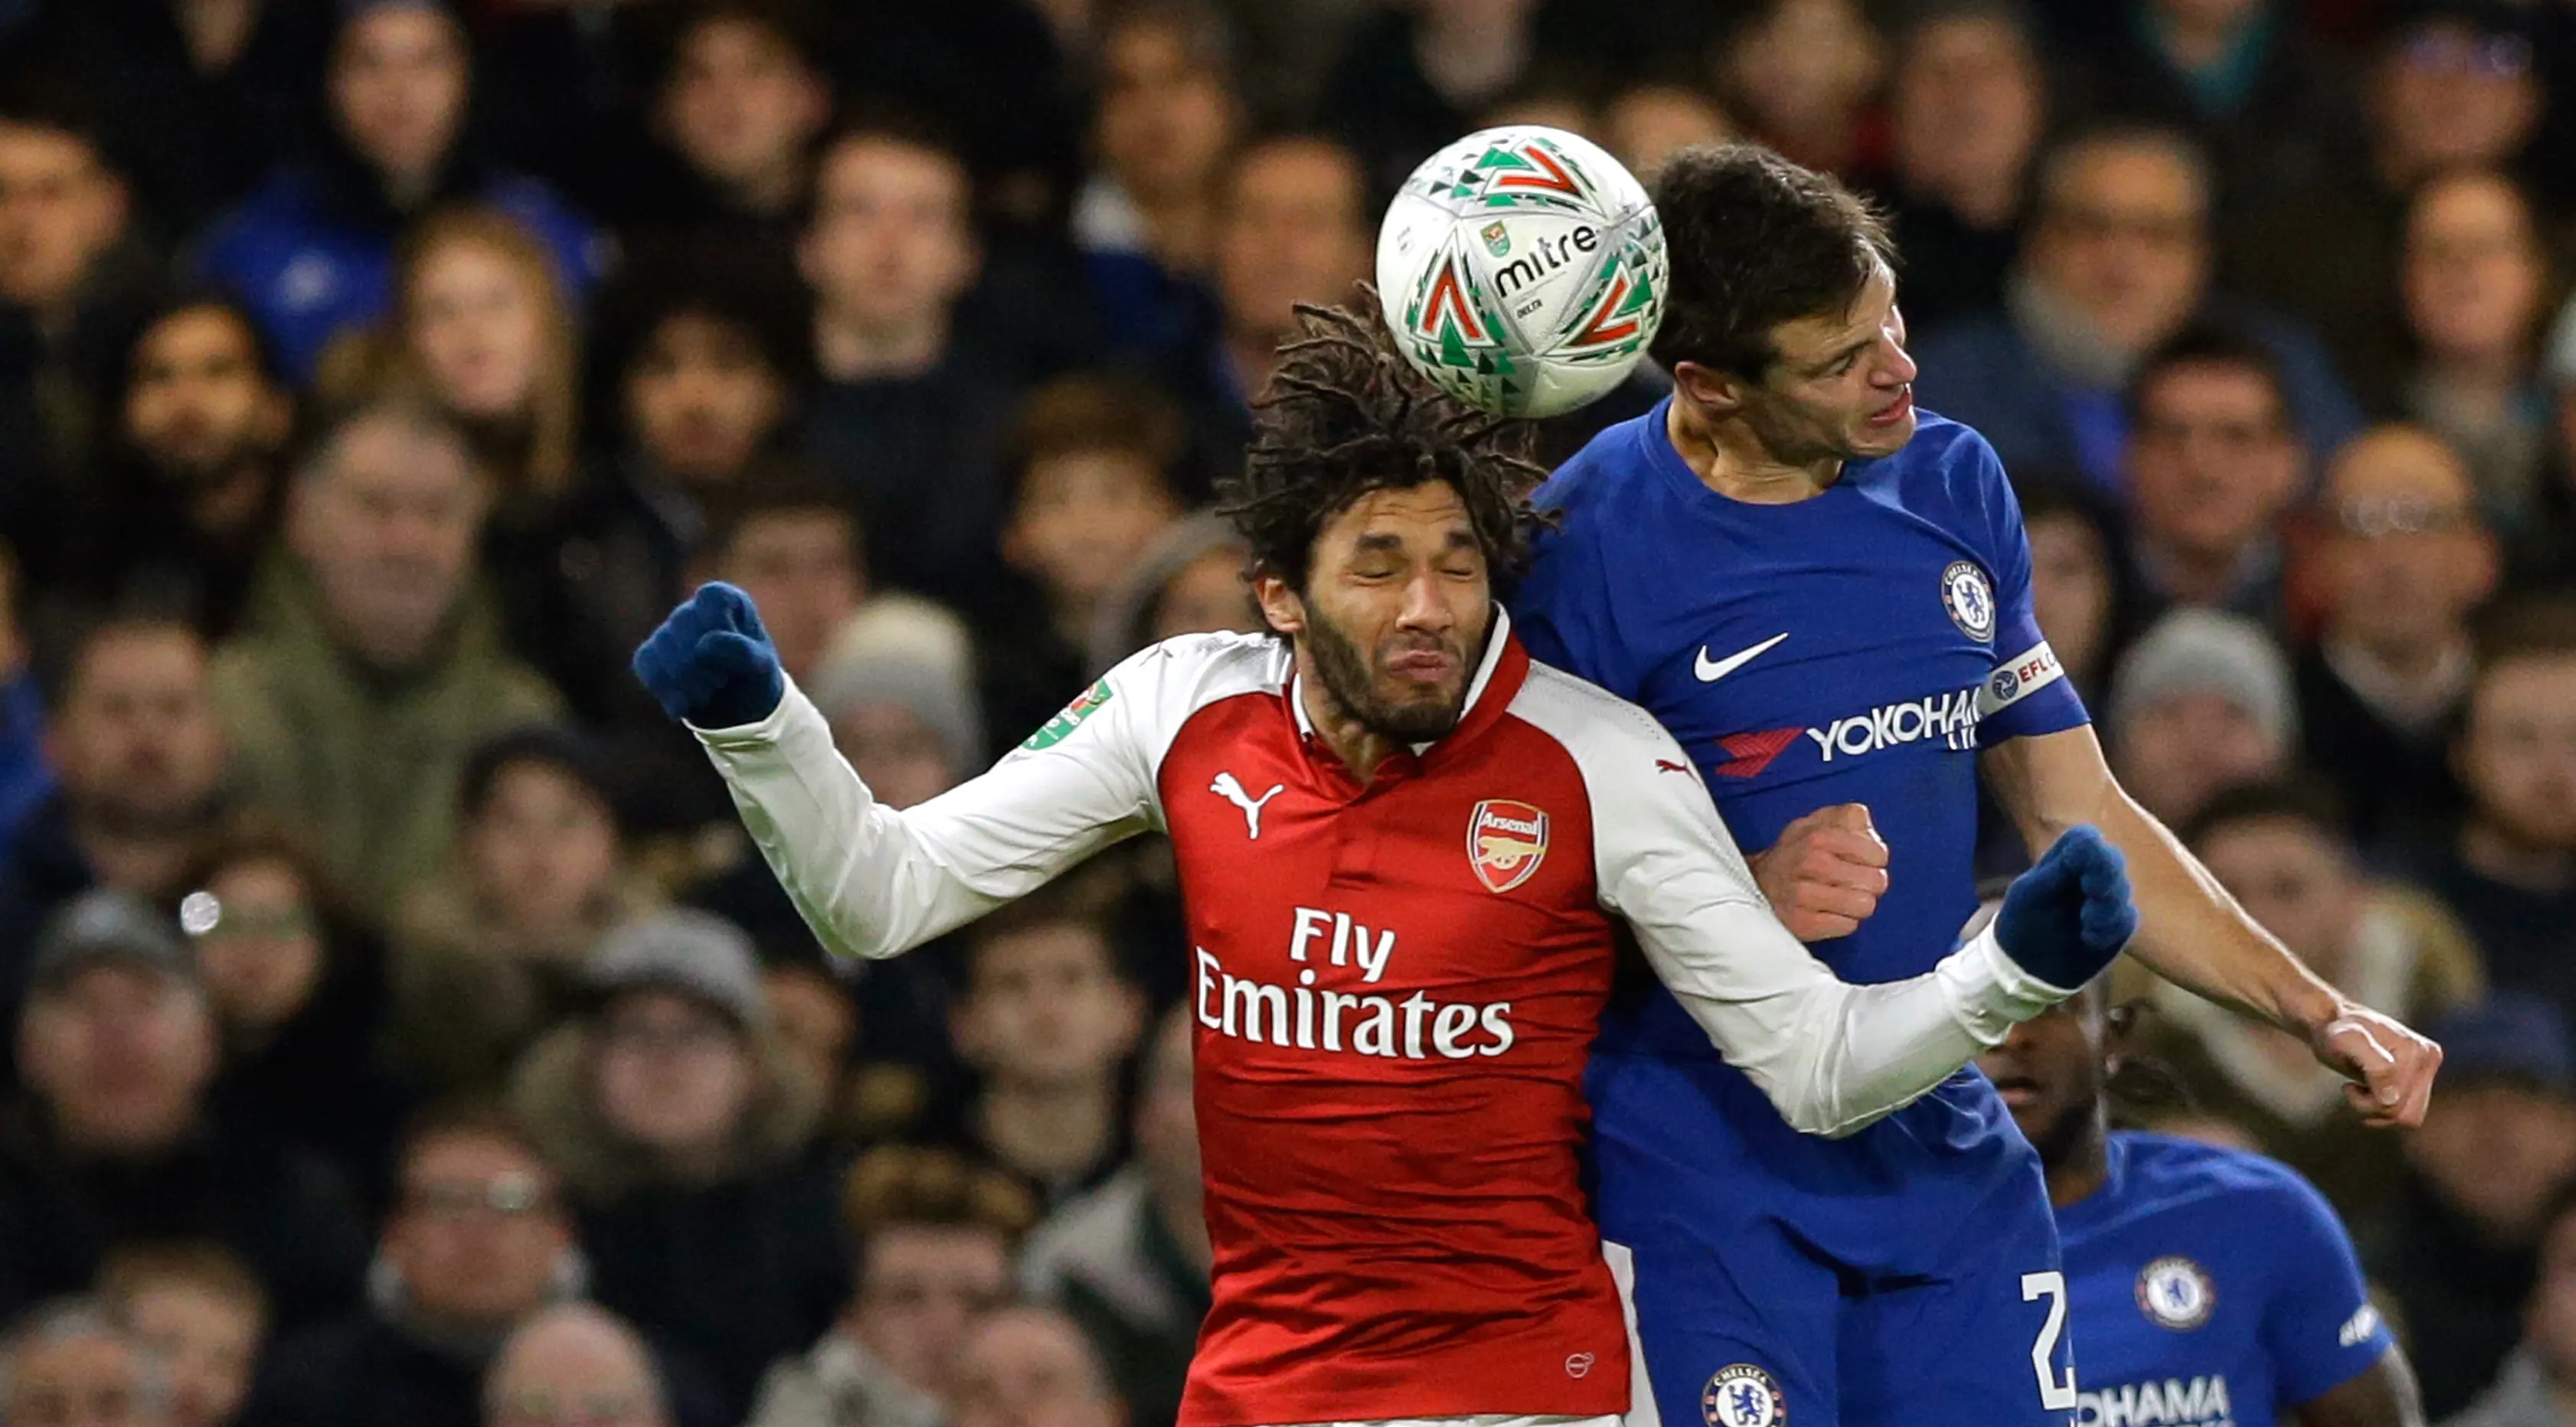 Pemain Arsenal, Mohamed Elneny melompat untuk merebut bola dari pemain Chelsea, Cesar Azpilicueta pada laga semifinal pertama Piala Liga Inggris di Stadion Stamford Bridge, Rabu (10/1). Chelsea harus puas diimbangi Arsenal 0-0. (AP/Kirsty Wigglesworth)